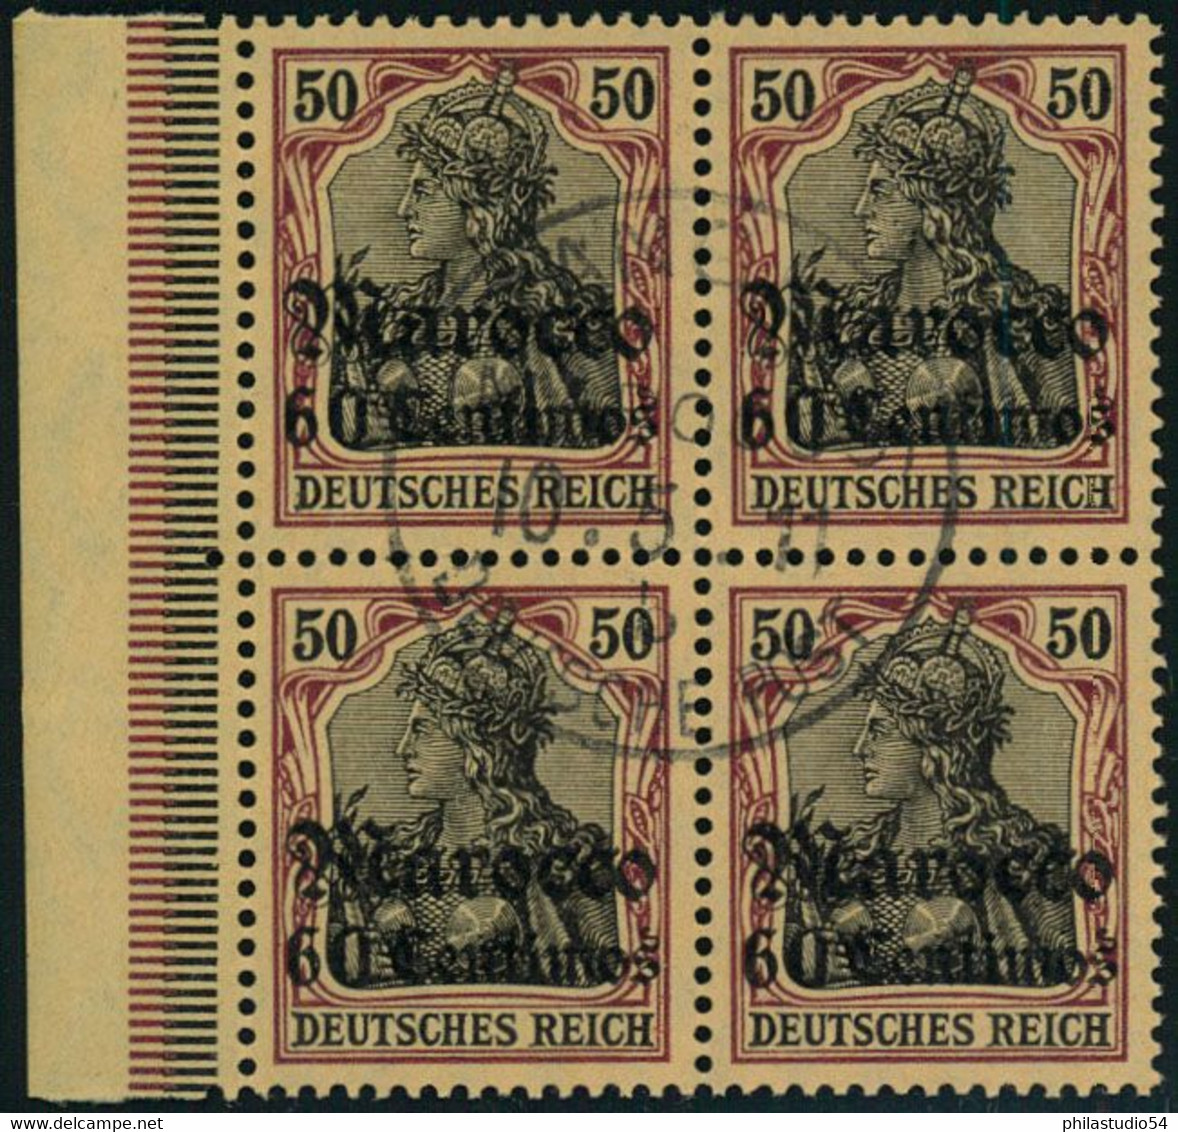 1911, 60 Centimes Auf 50 Pfg. Germania Im Viererblock Mit Seltenem Stempel TANGER MAROCCO. - Deutsche Post In Marokko